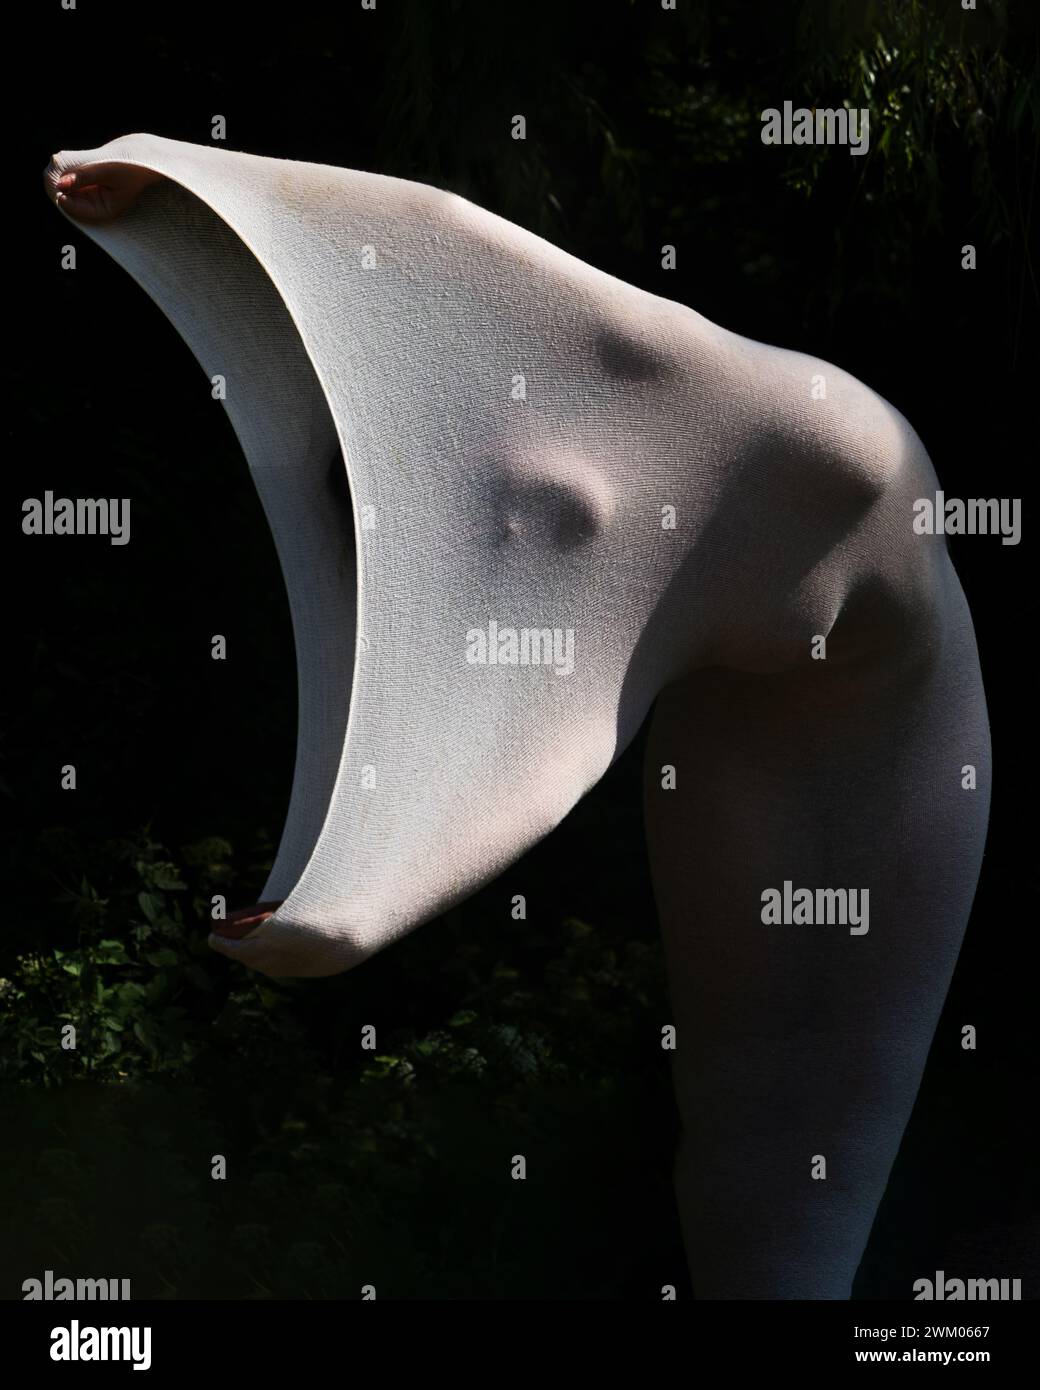 foto artistica di una giovane donna nuda, sexy ed elegante, il suo corpo avvolto in un abito bianco stretto a pelle lunga che mette in risalto le forme del corpo, come una statua vivente in natura Foto Stock